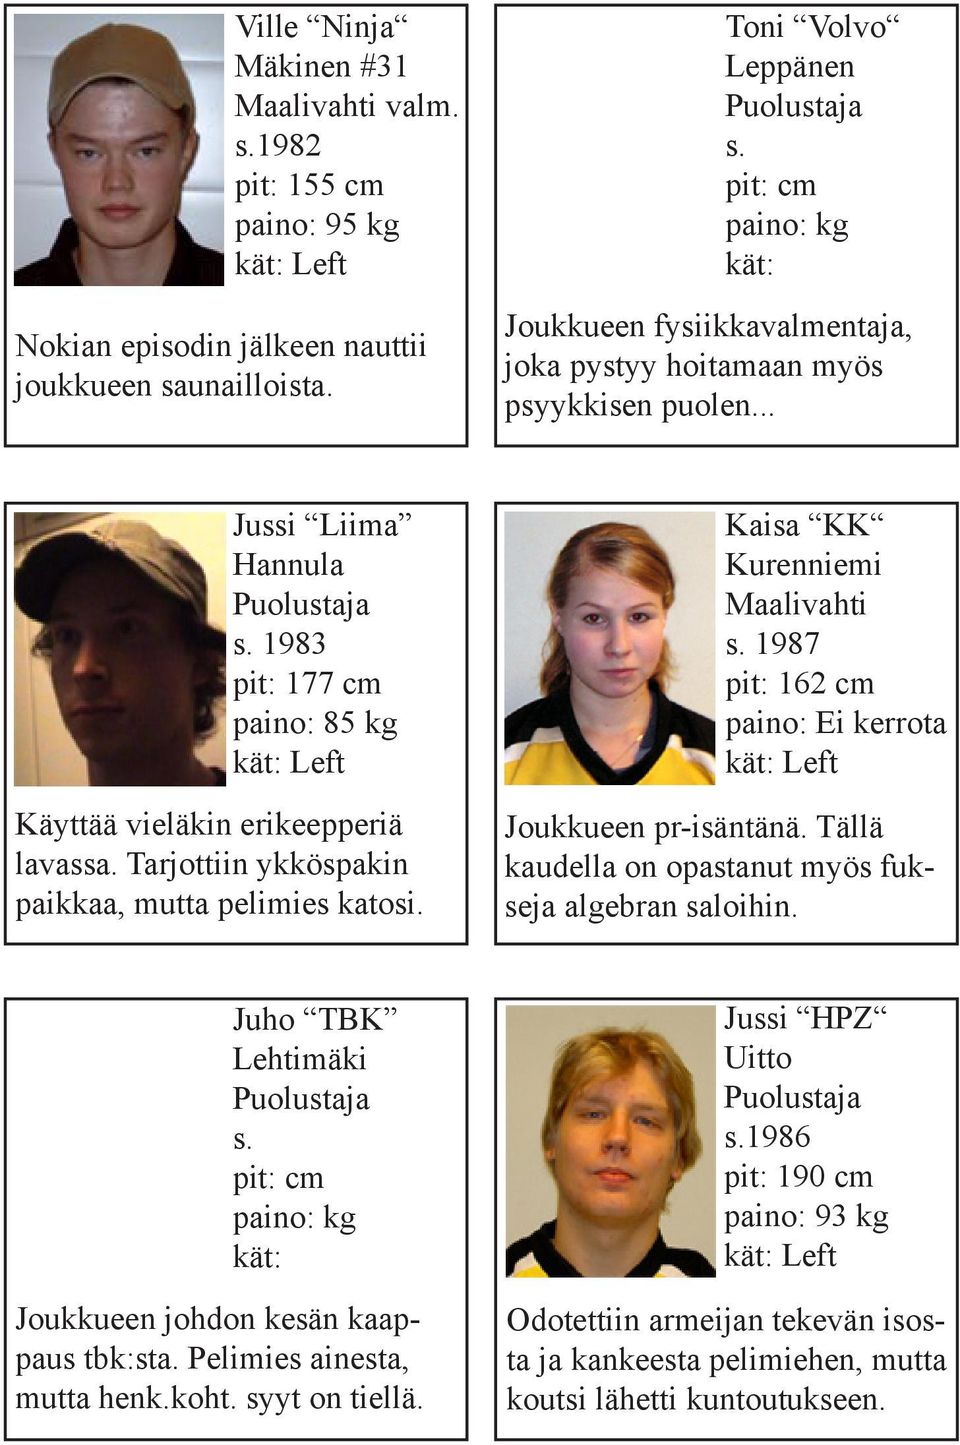 Tarjottiin ykköspakin paikkaa, mutta pelimies katosi. Kaisa KK Kurenniemi Maalivahti s. 1987 pit: 162 cm paino: Ei kerrota Joukkueen pr-isäntänä.